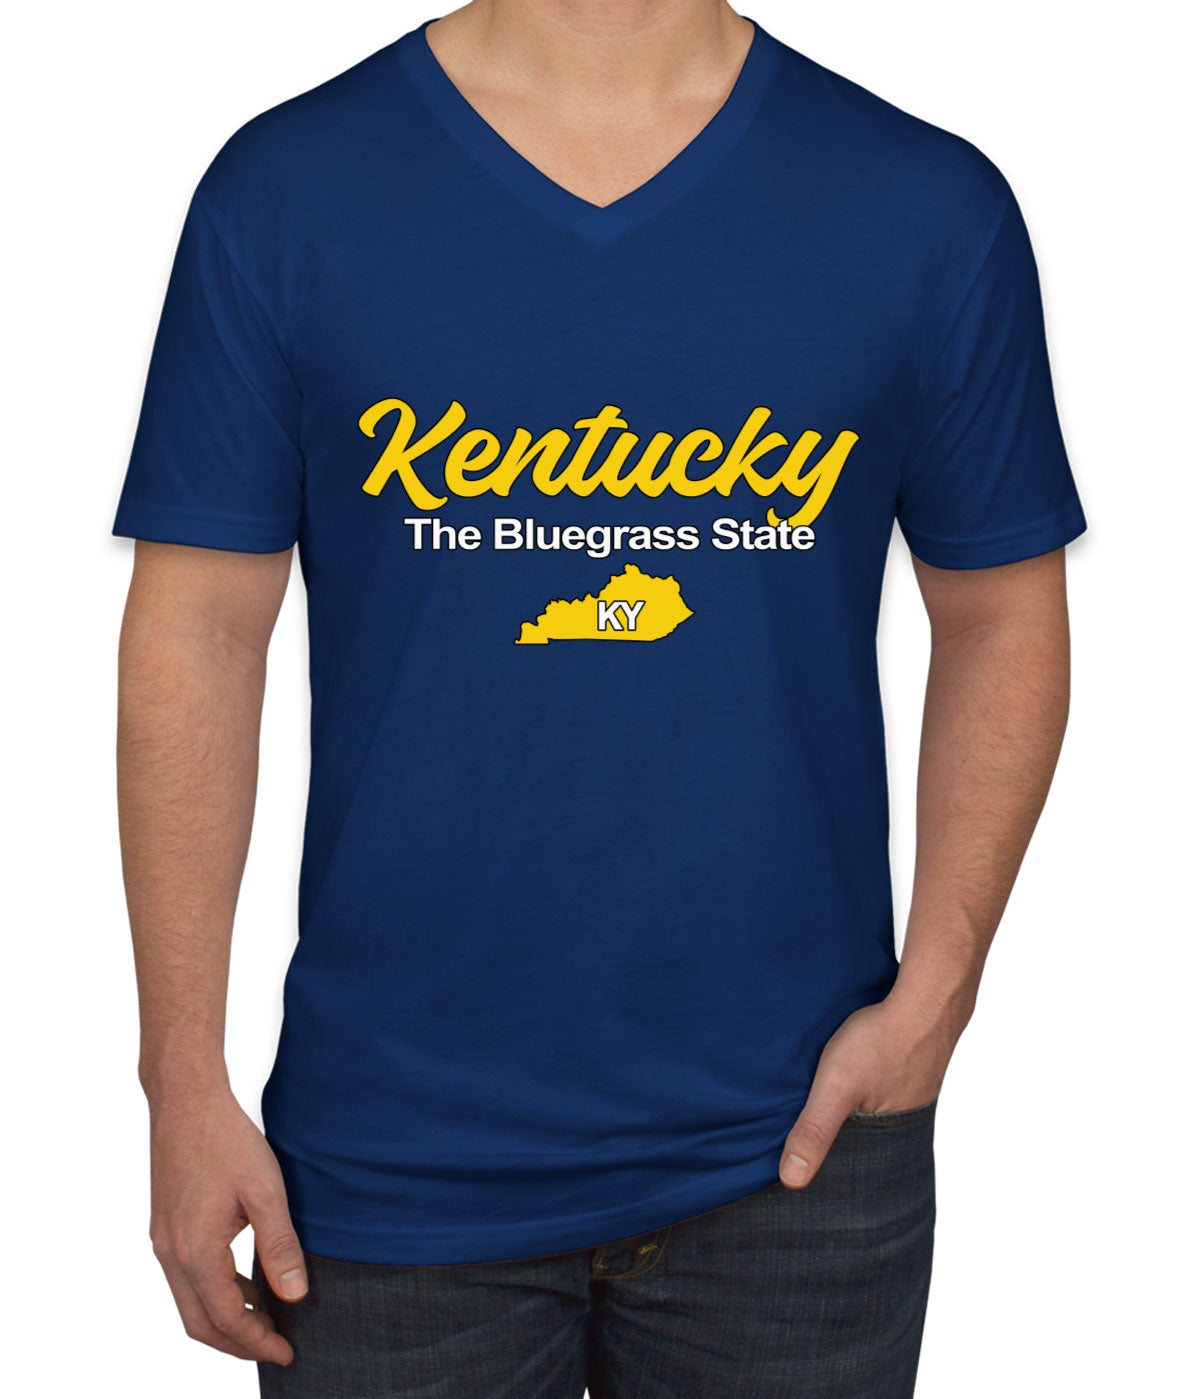 Kentucky The Bluegrass State Men's V Neck T-shirt